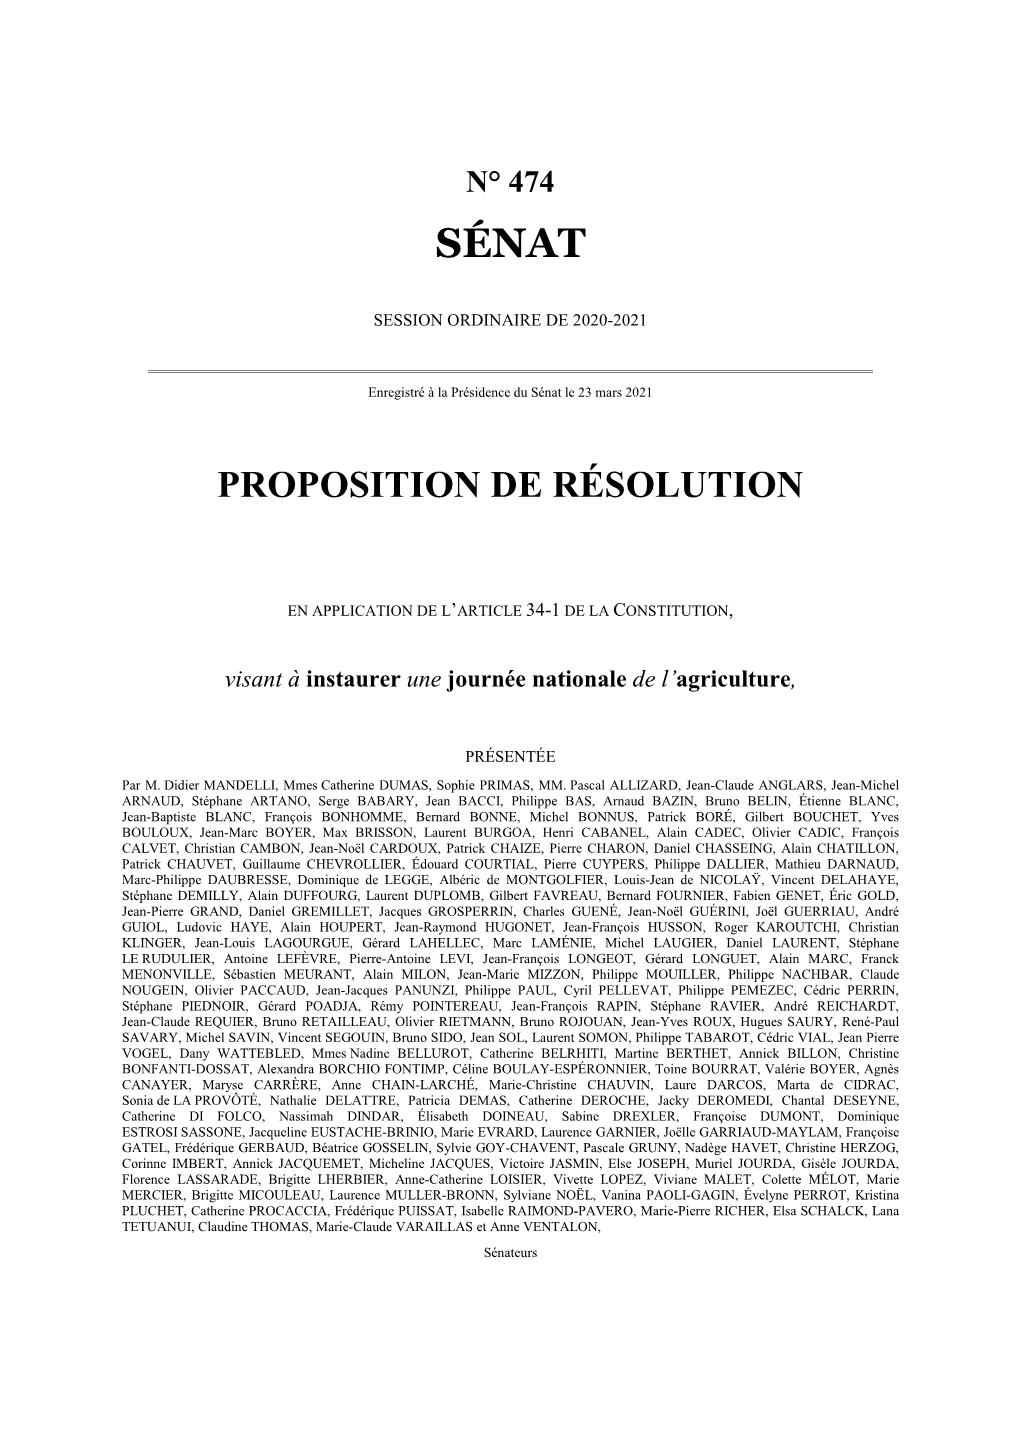 Proposition De Résolution